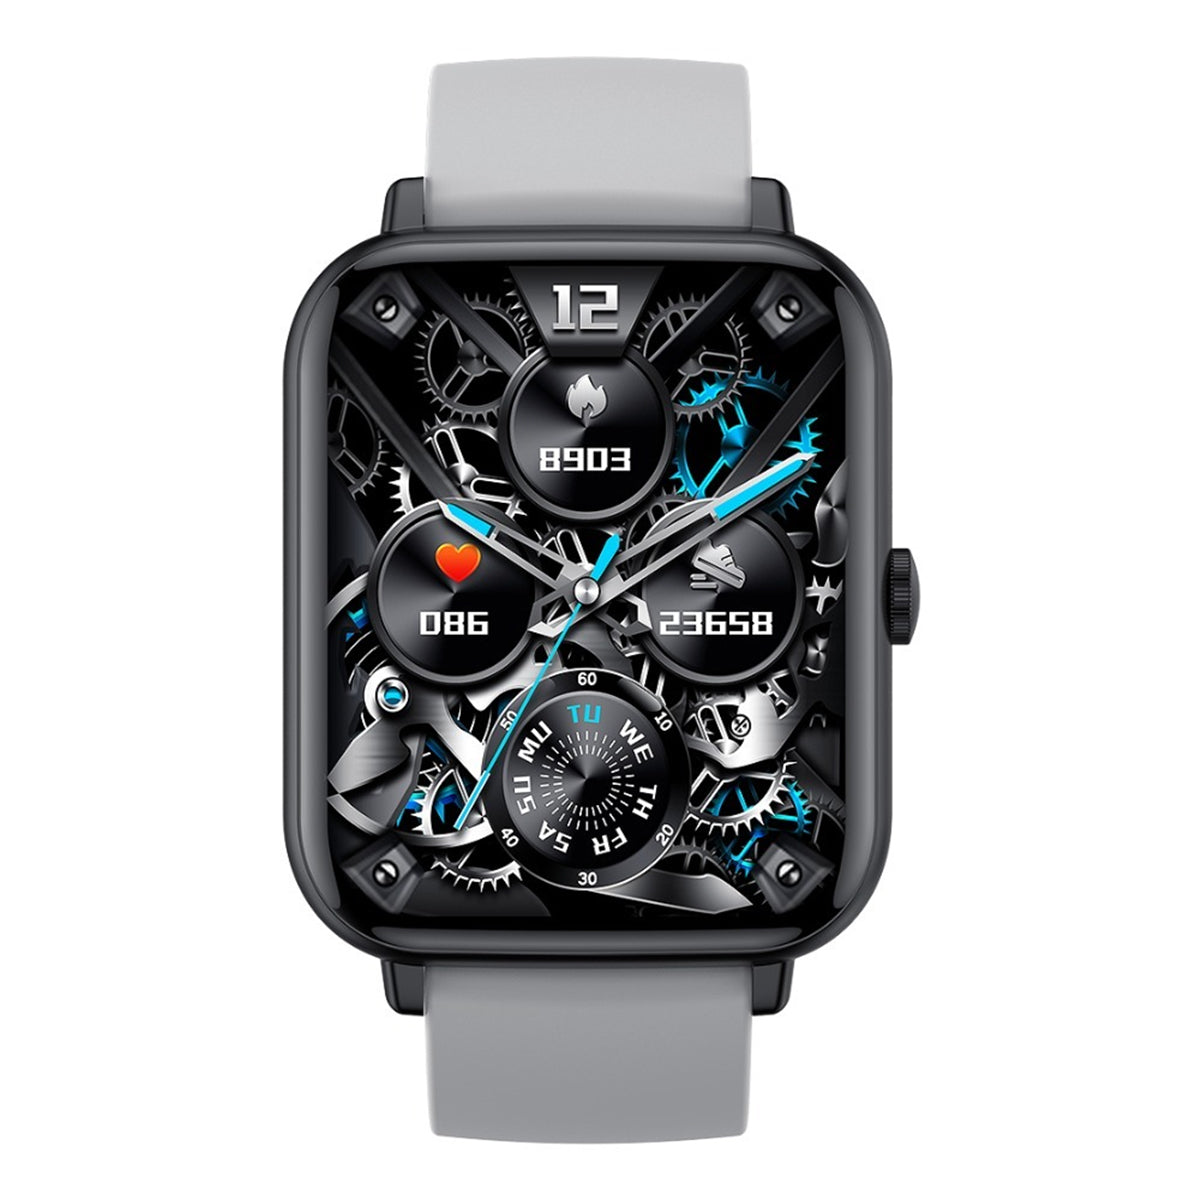 Fralugio Smart Watch Reloj Inteligente A8 Full Touch Ips Hd